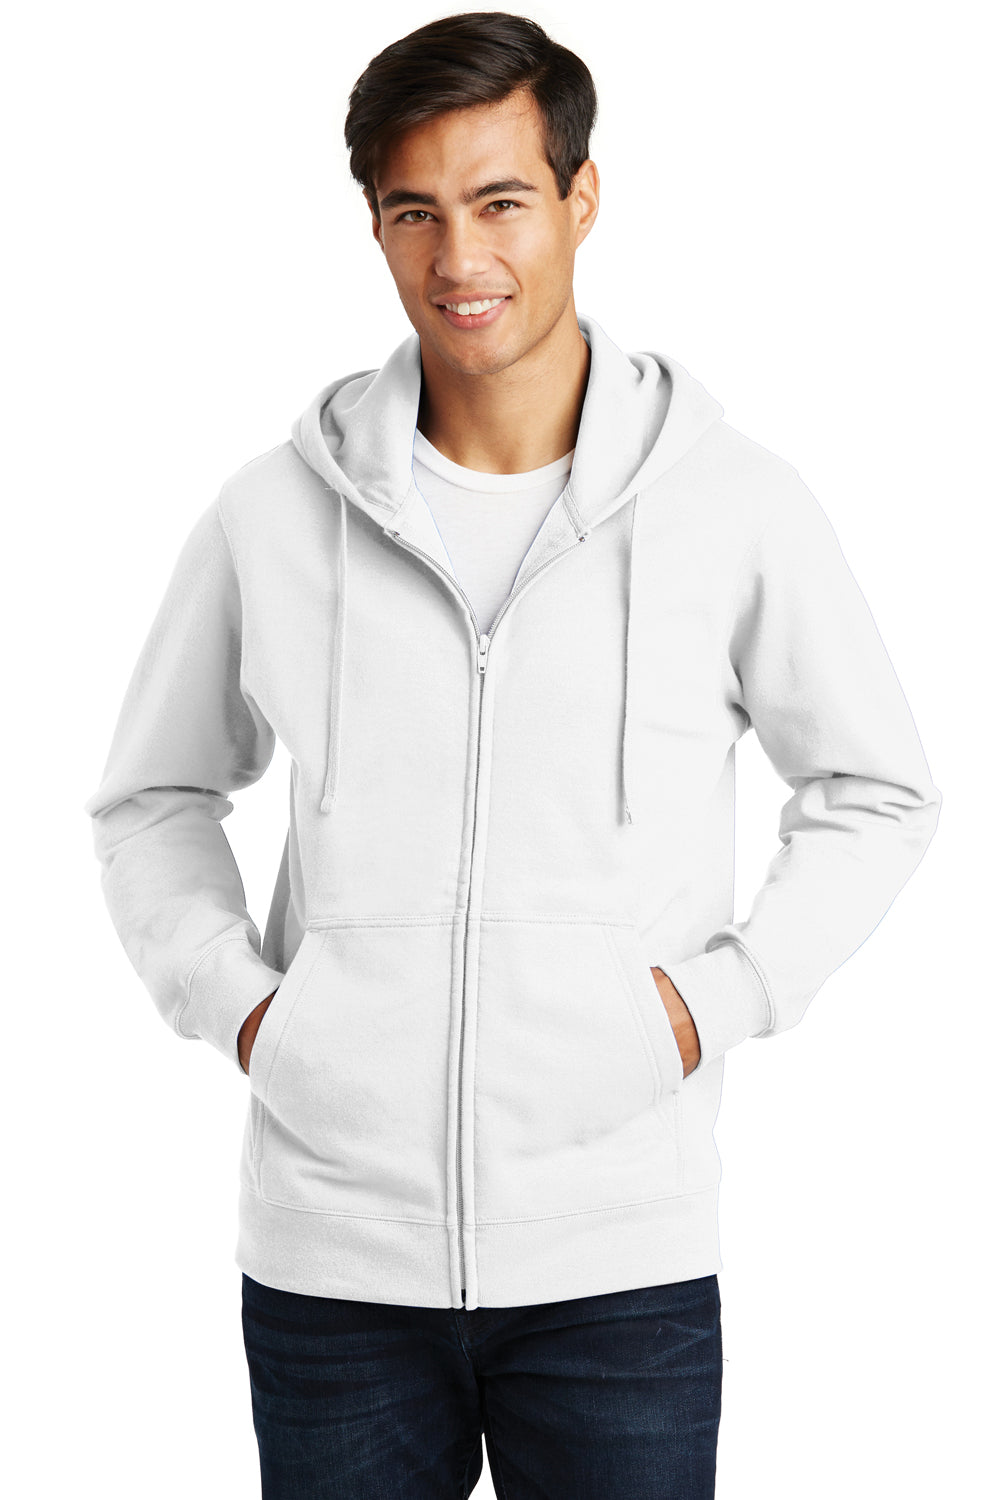 Port & Company PC850ZH Mens Fan Favorite Fleece Full Zip Hooded Sweatshirt Hoodie White Front